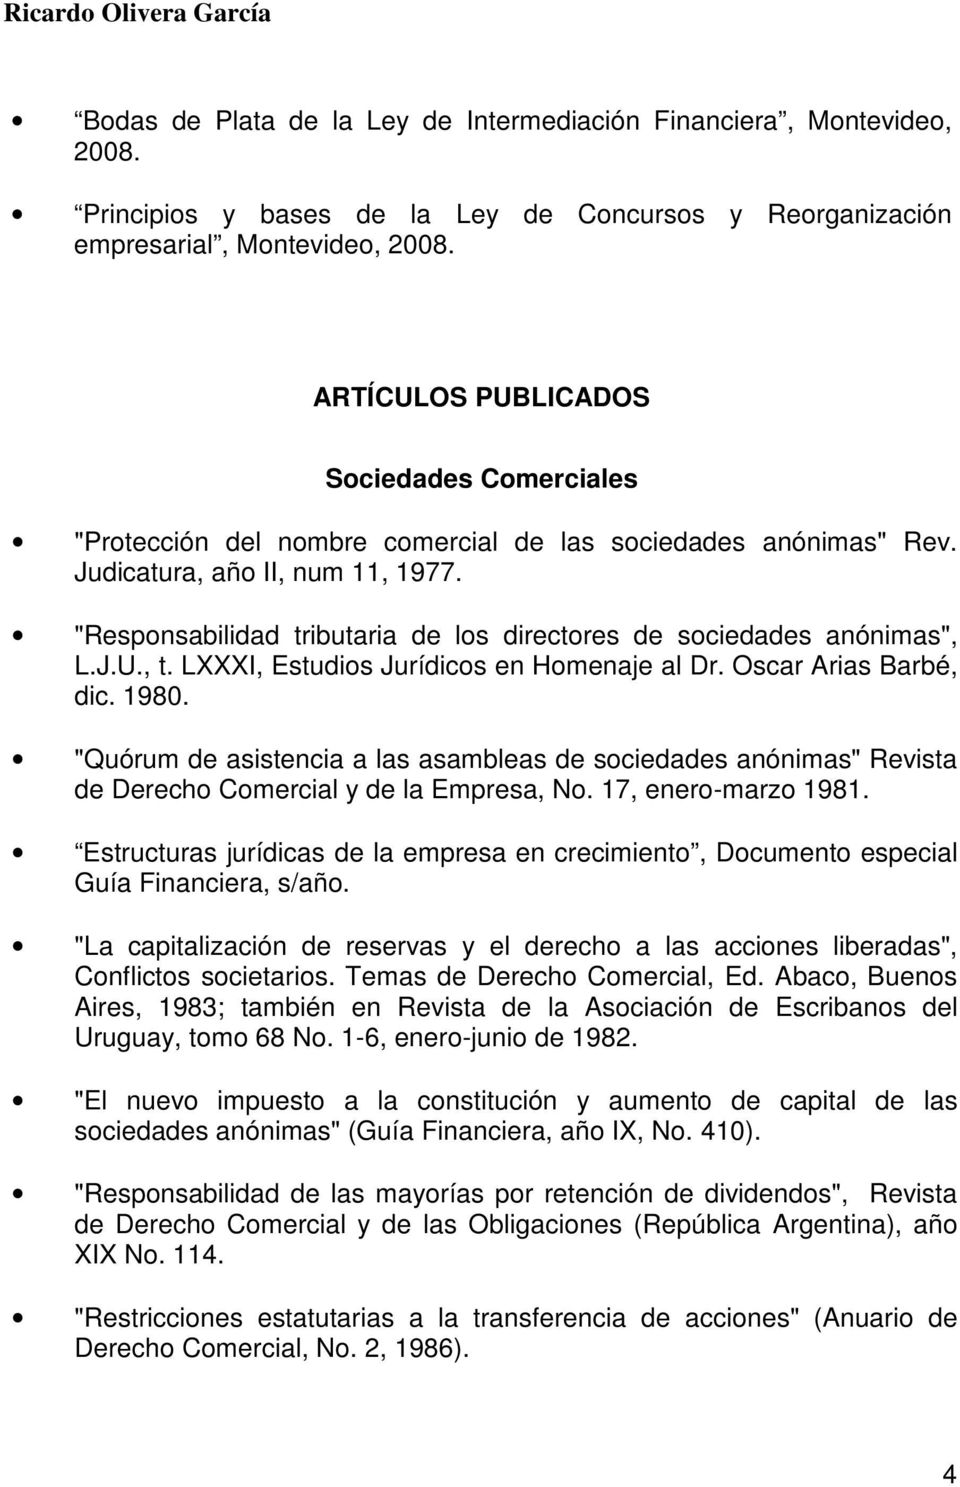 "Responsabilidad tributaria de los directores de sociedades anónimas", L.J.U., t. LXXXI, Estudios Jurídicos en Homenaje al Dr. Oscar Arias Barbé, dic. 1980.